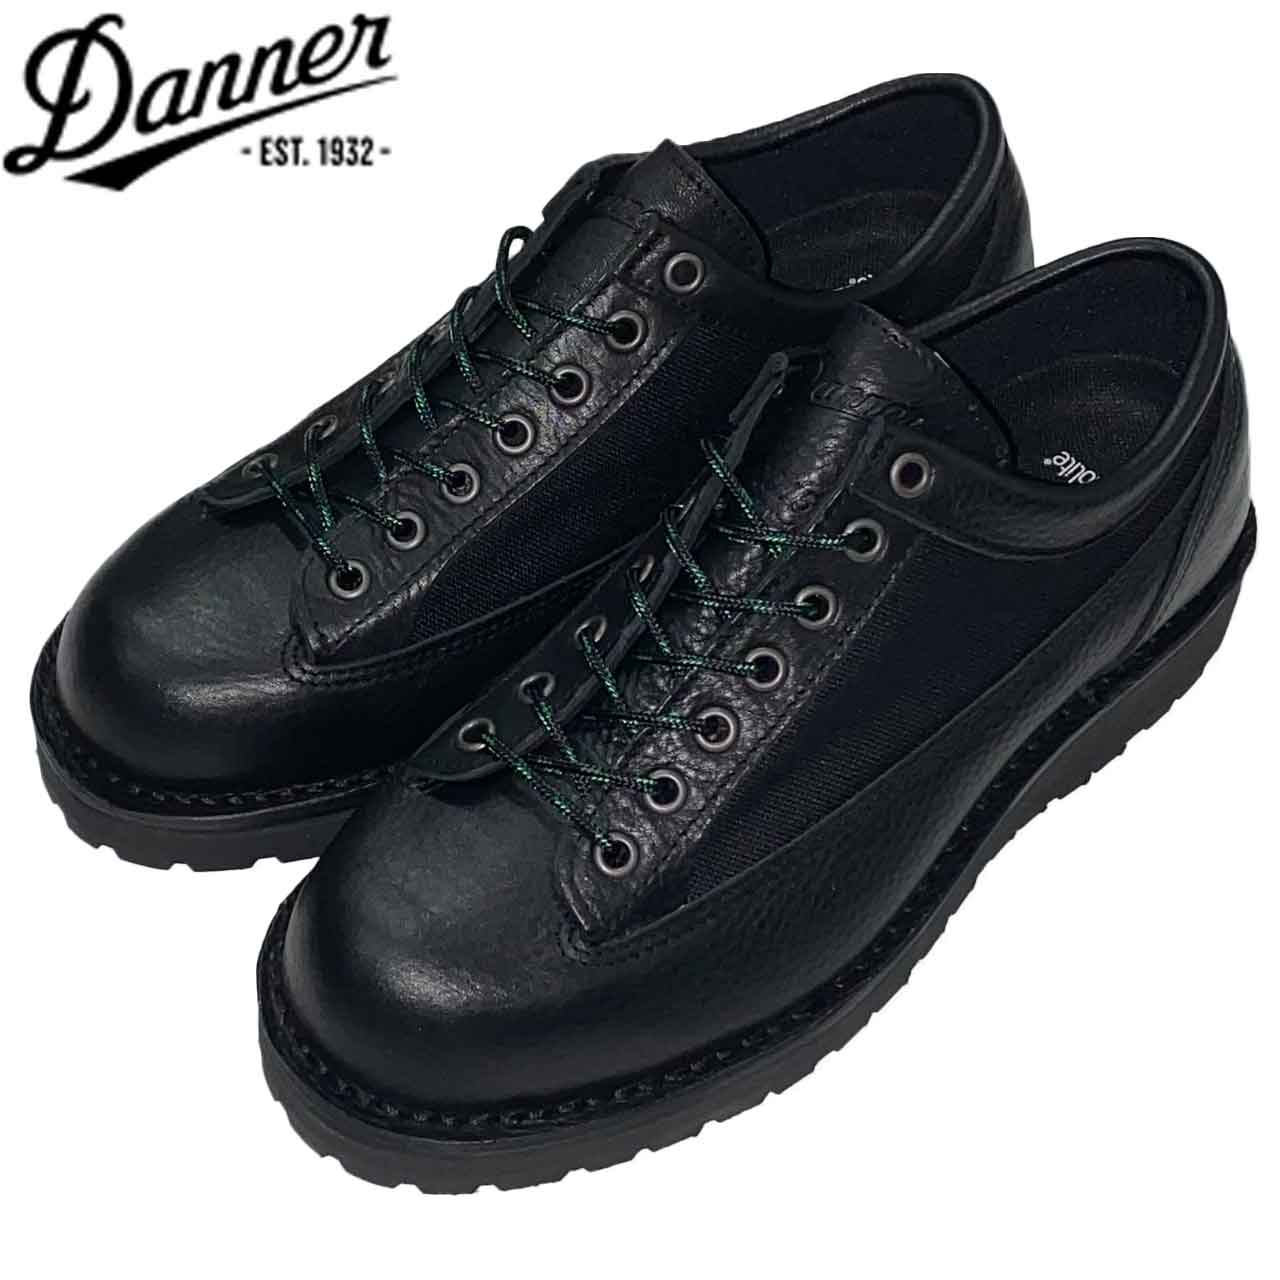 Danner ダナー Cascade Range W/P Klt カスケードレンジ BLACK 日本製 D214015